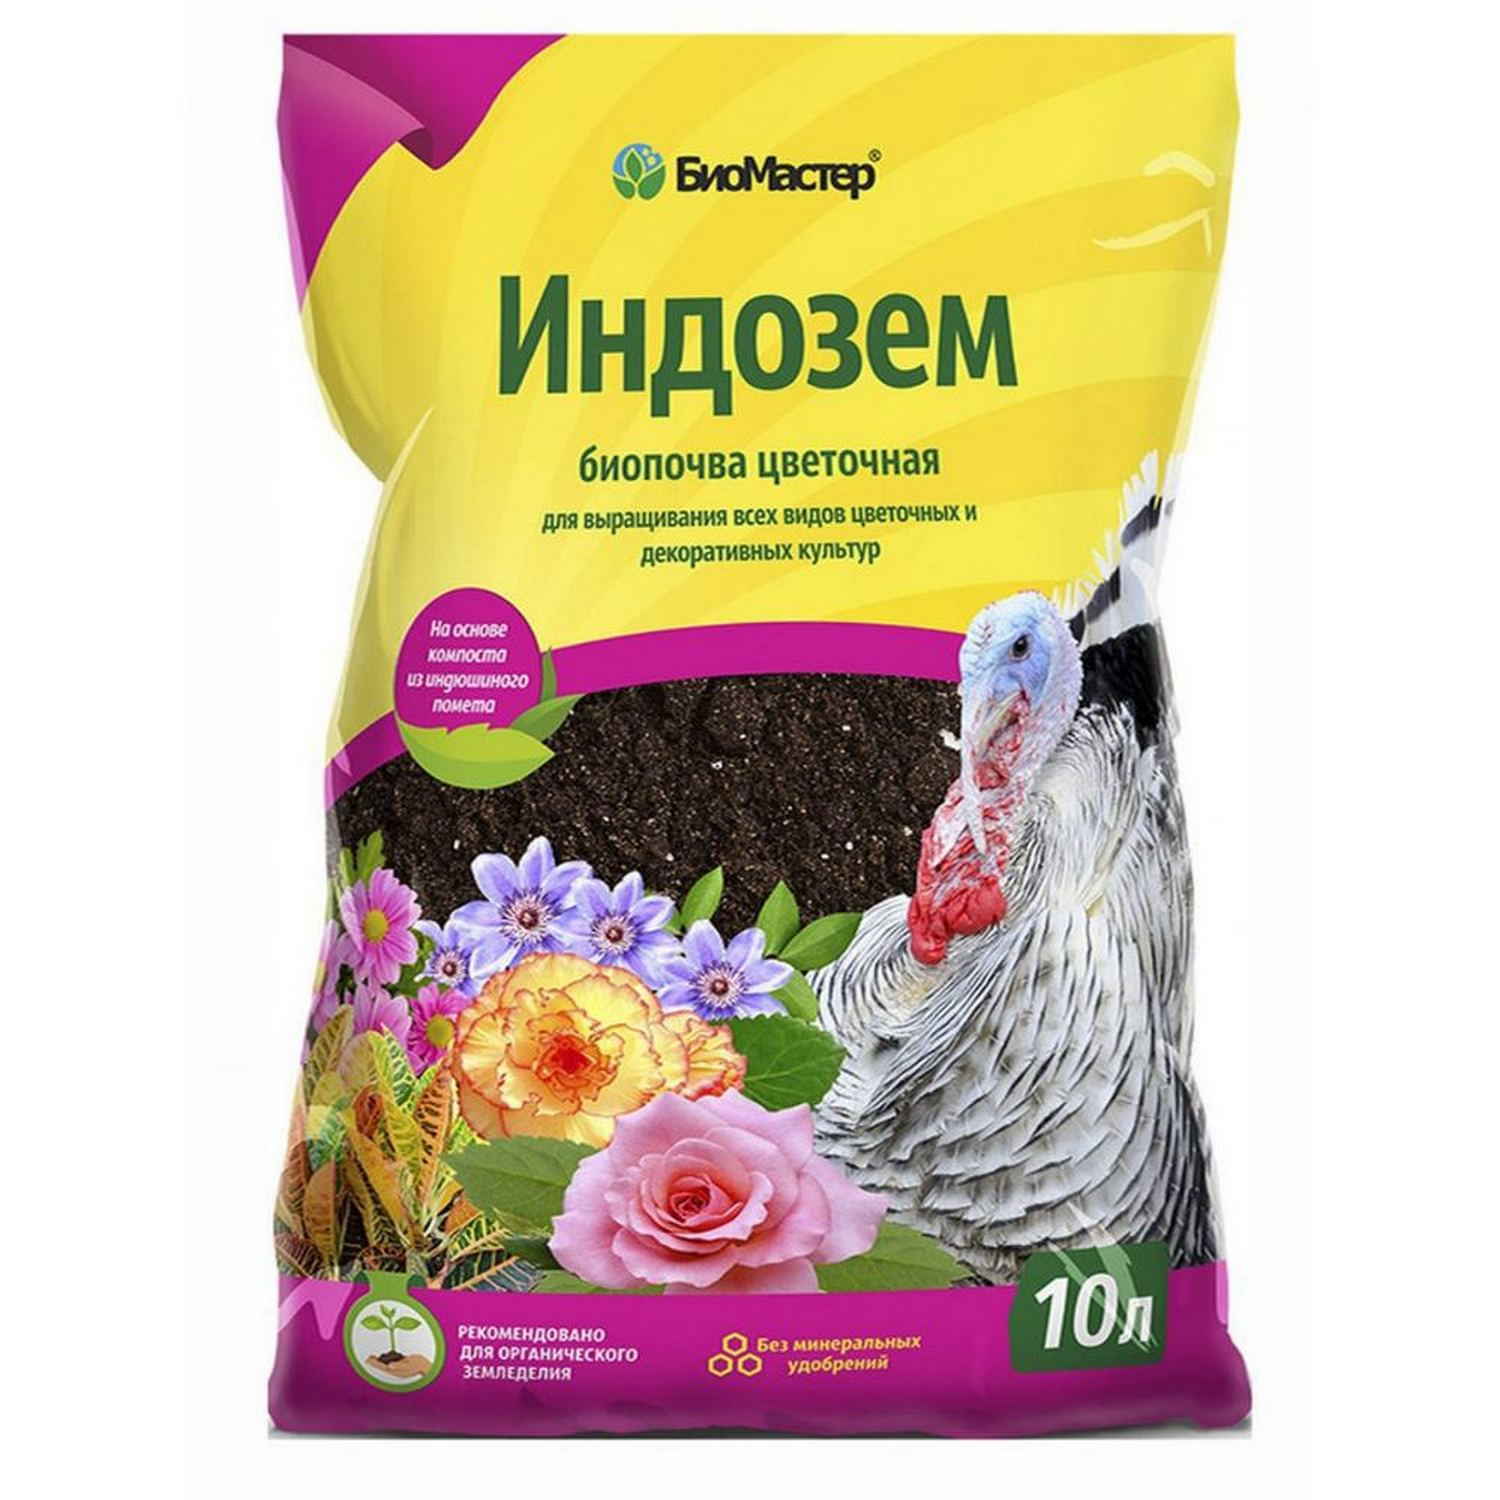  БиоМастер Индозем цветочный, 10л по цене 299 ₽/шт.  в .